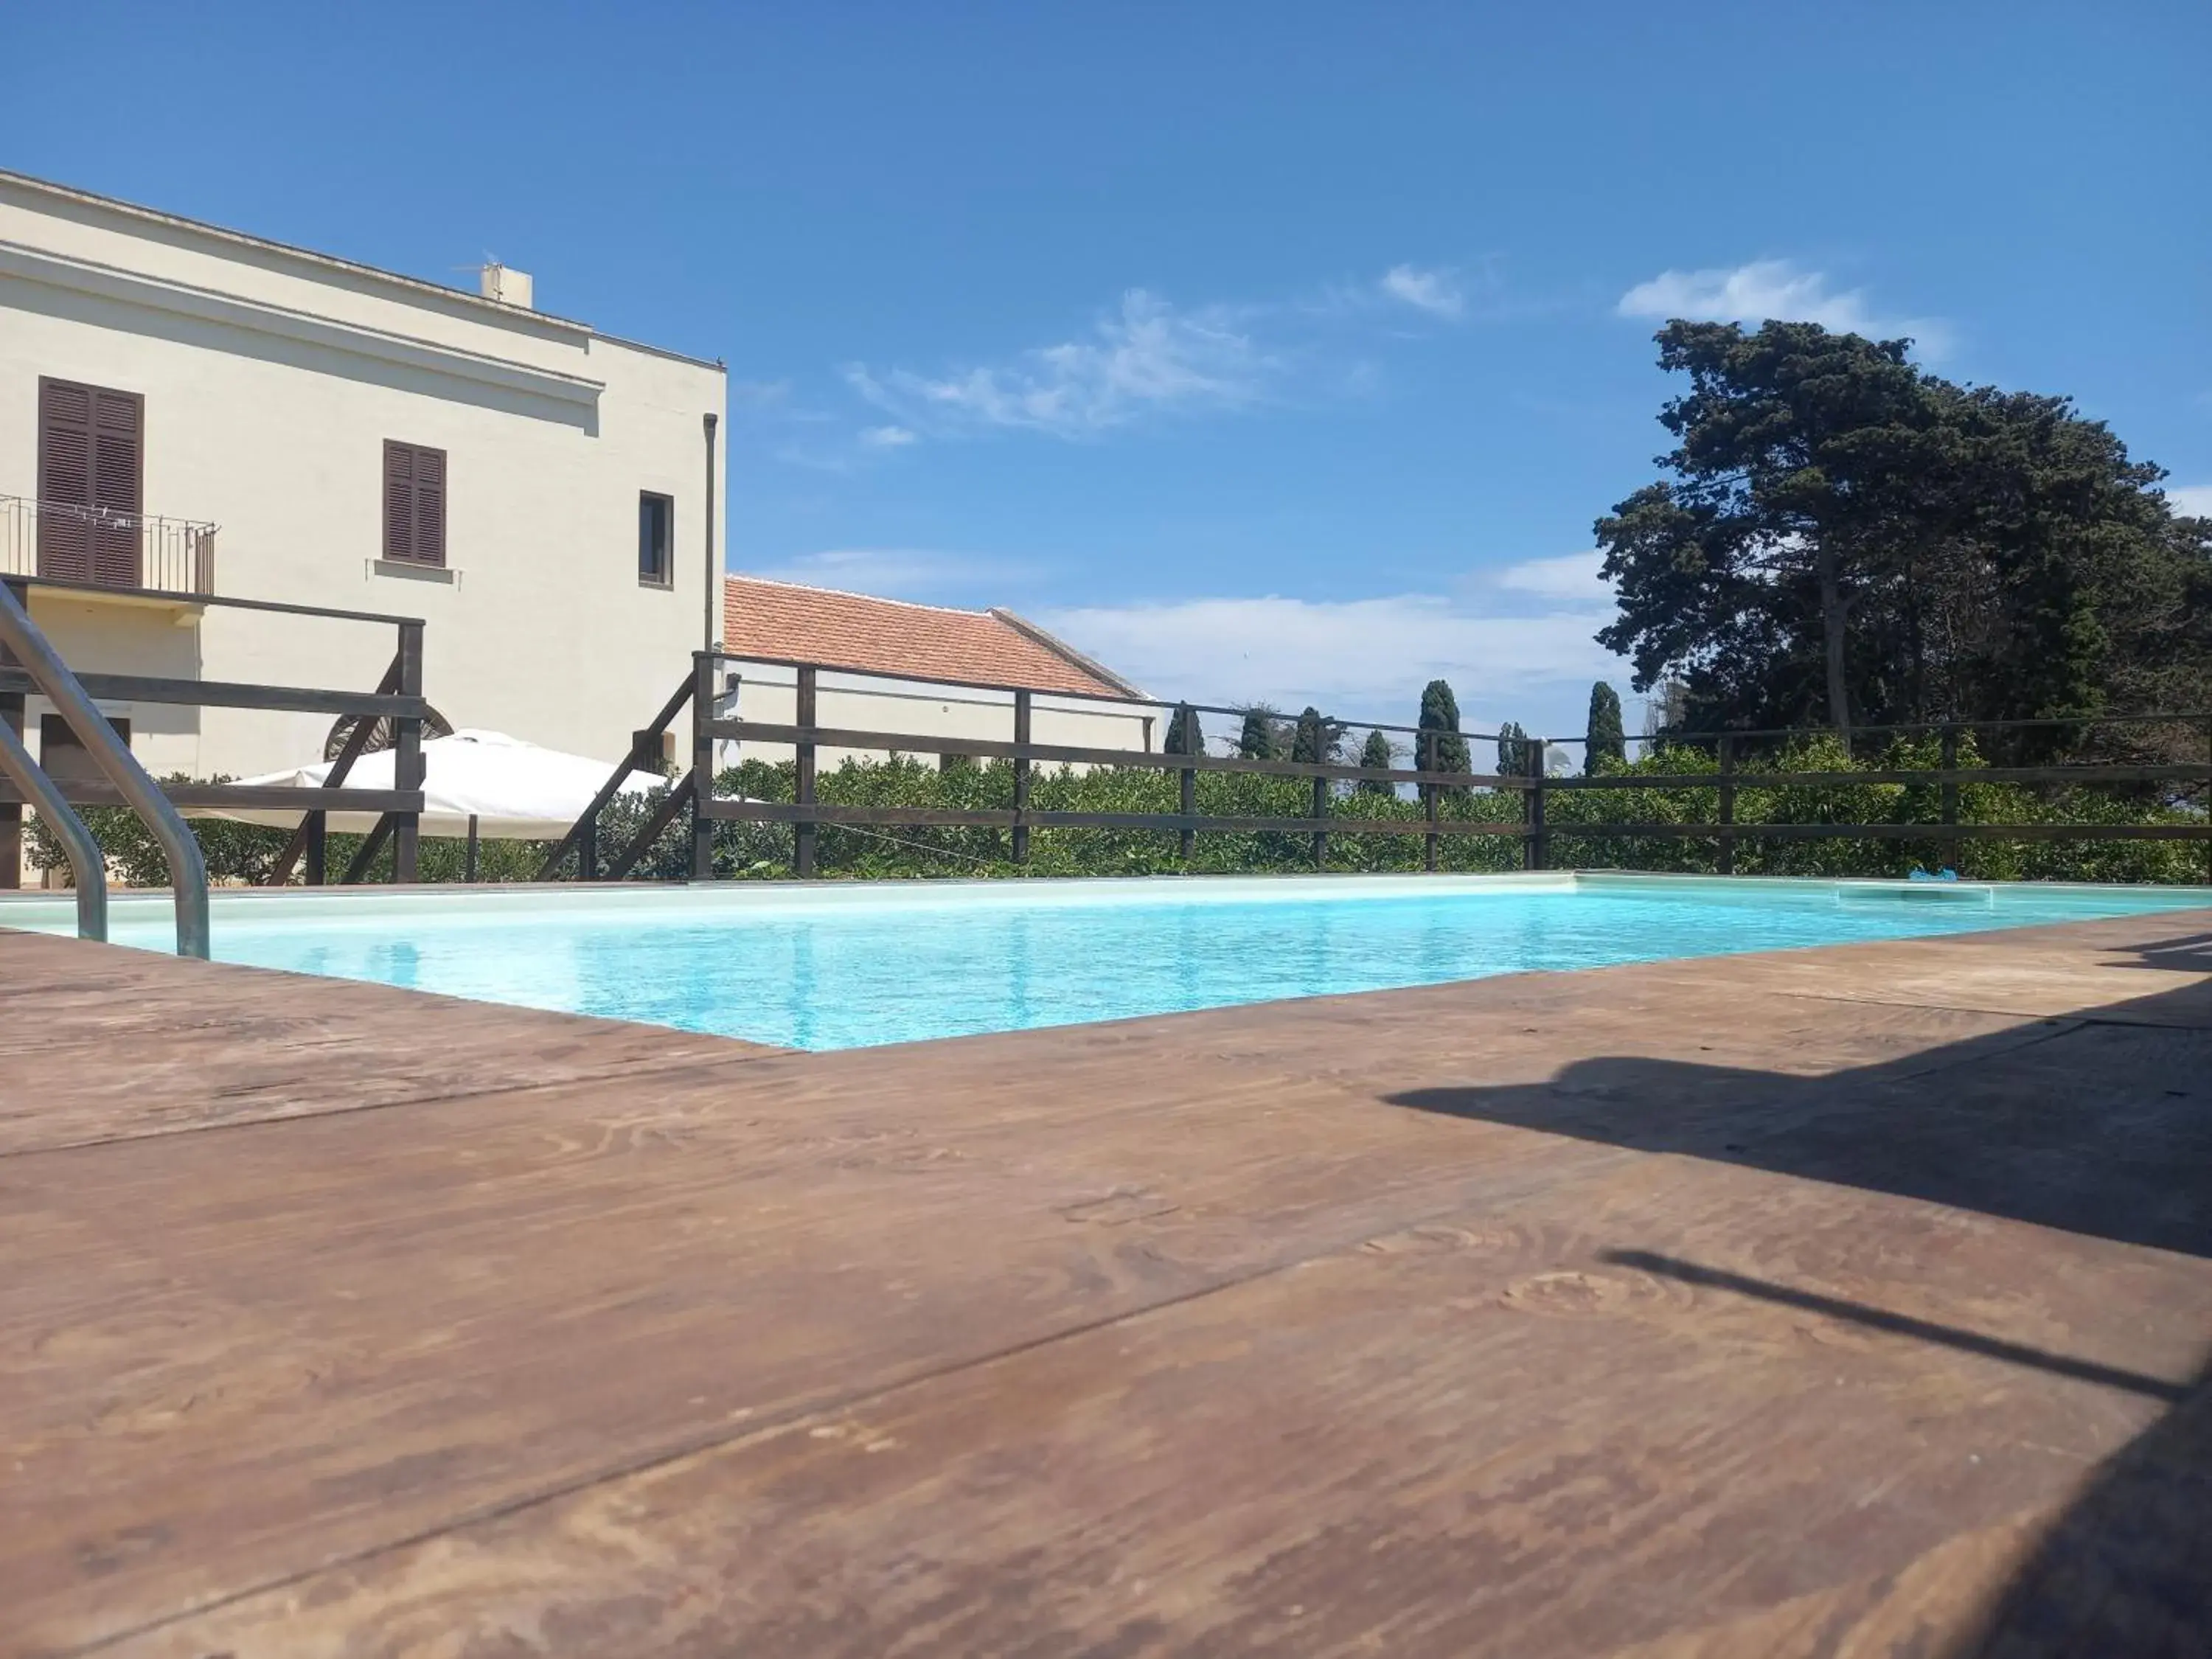 Swimming Pool in Baglio Spanò - Antiche Dimore di Sicilia